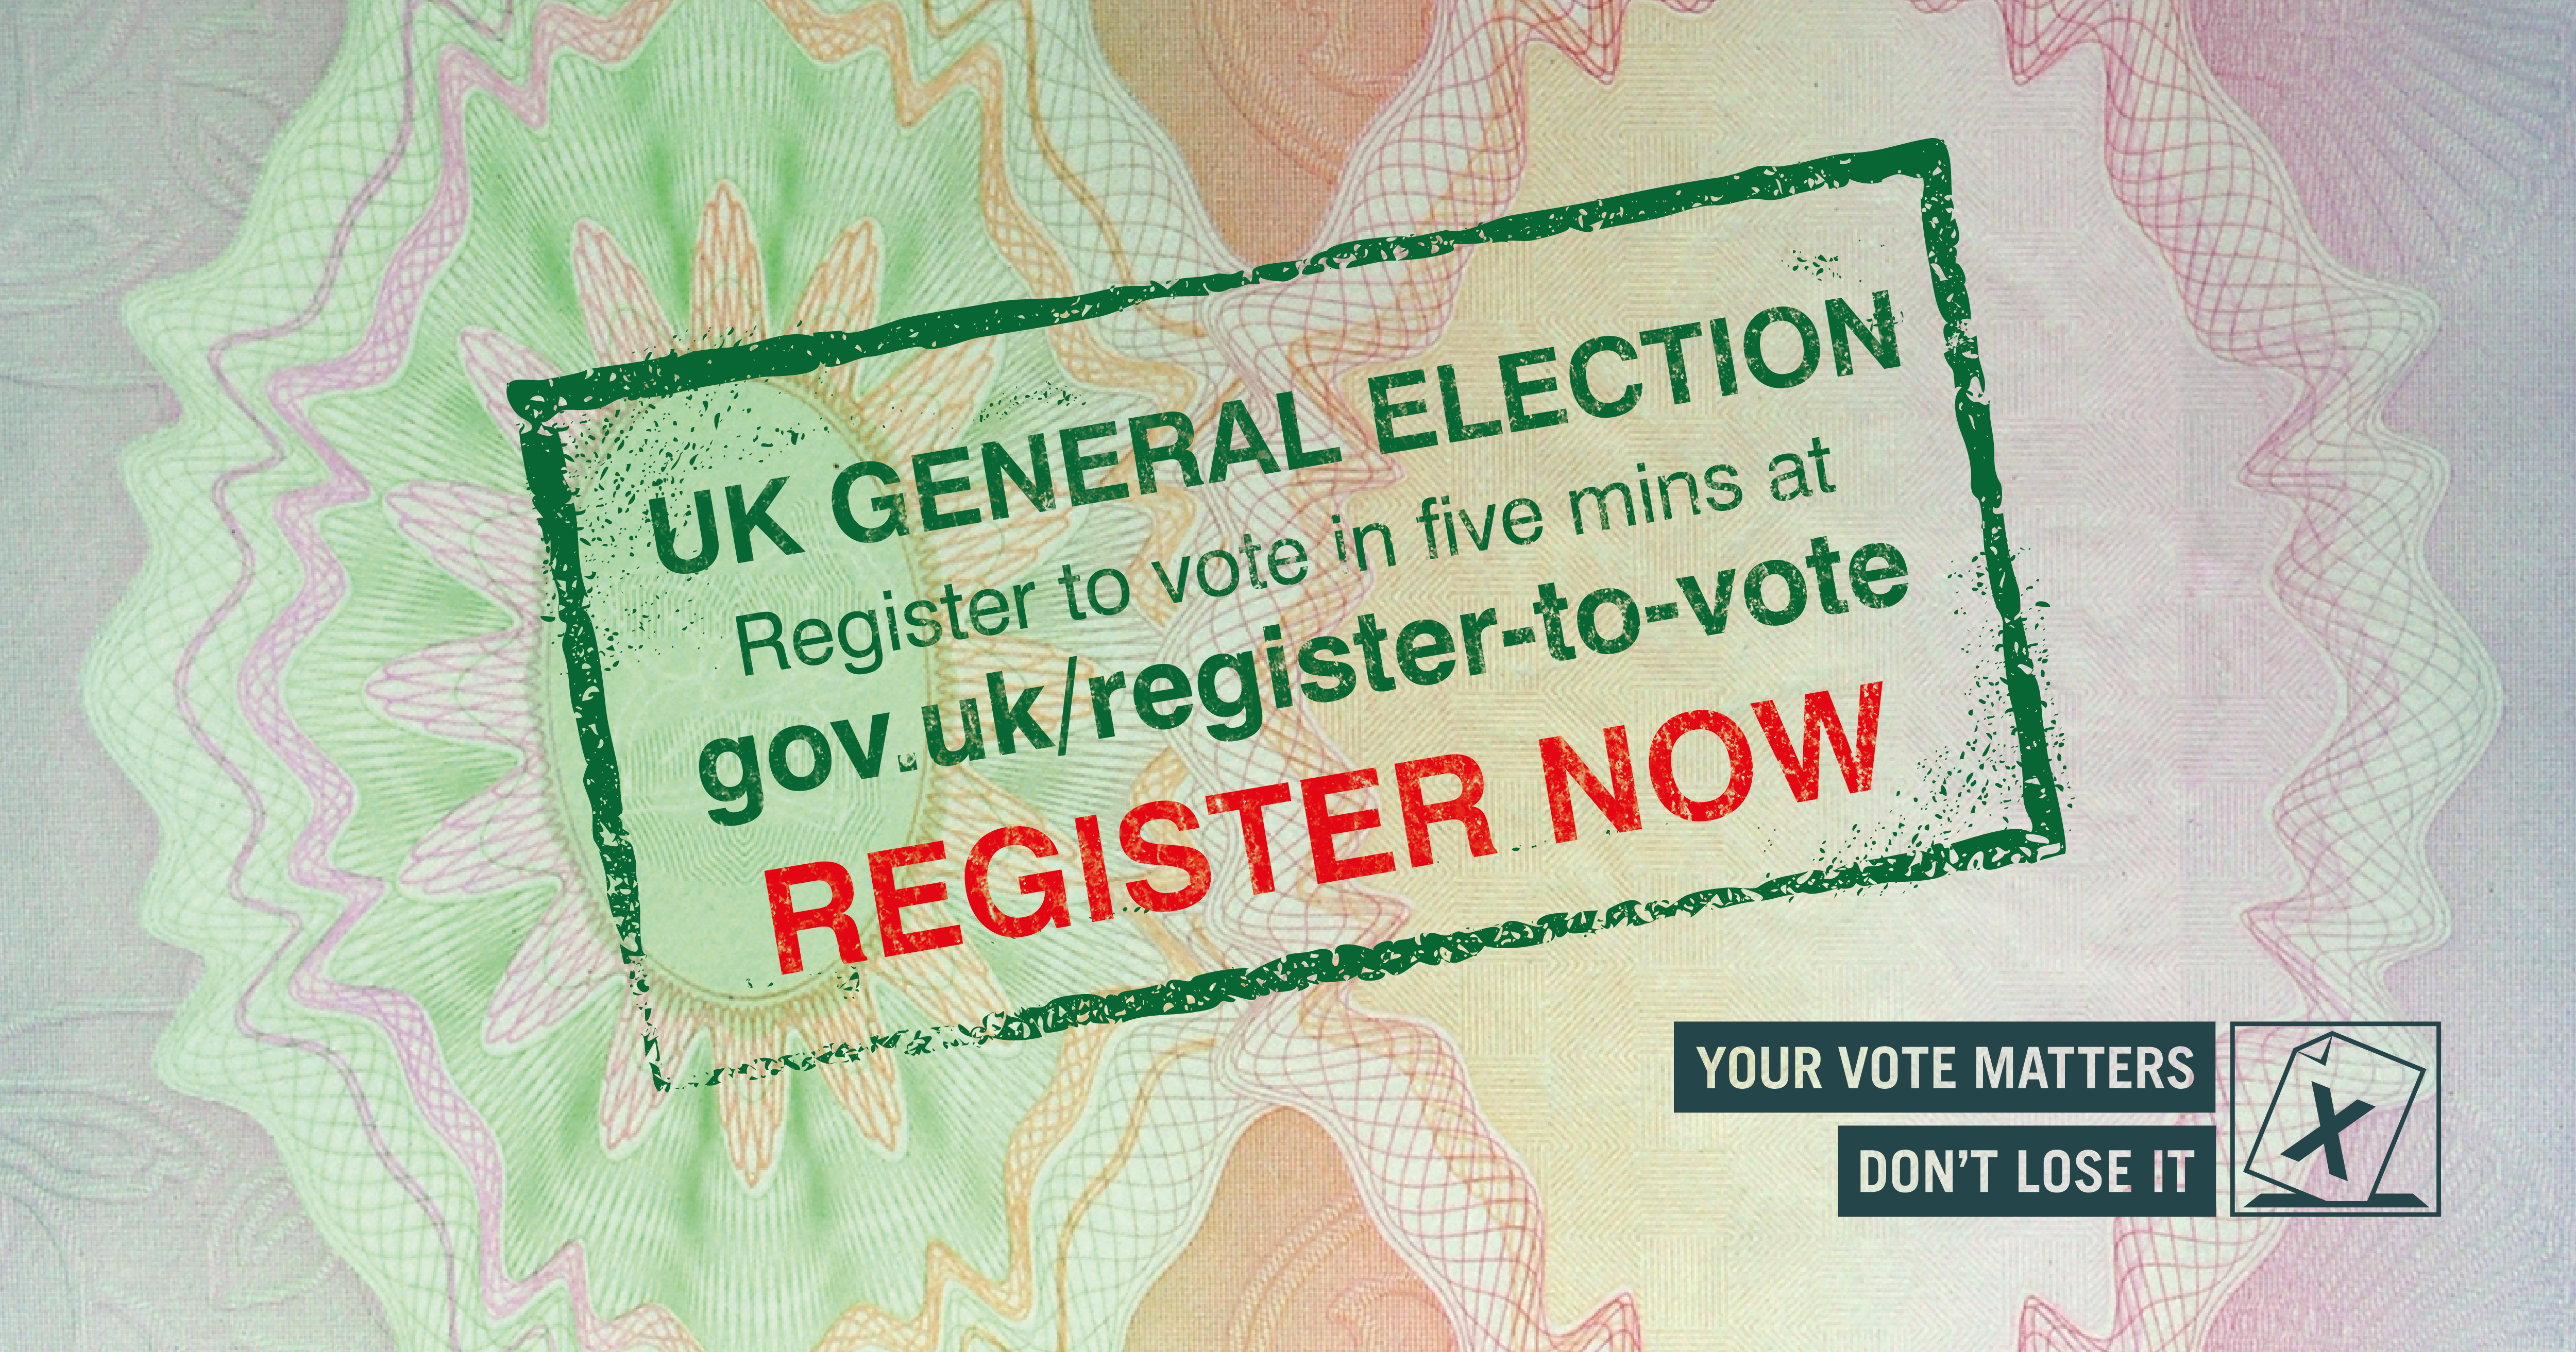 UK General Election: Register to Vote